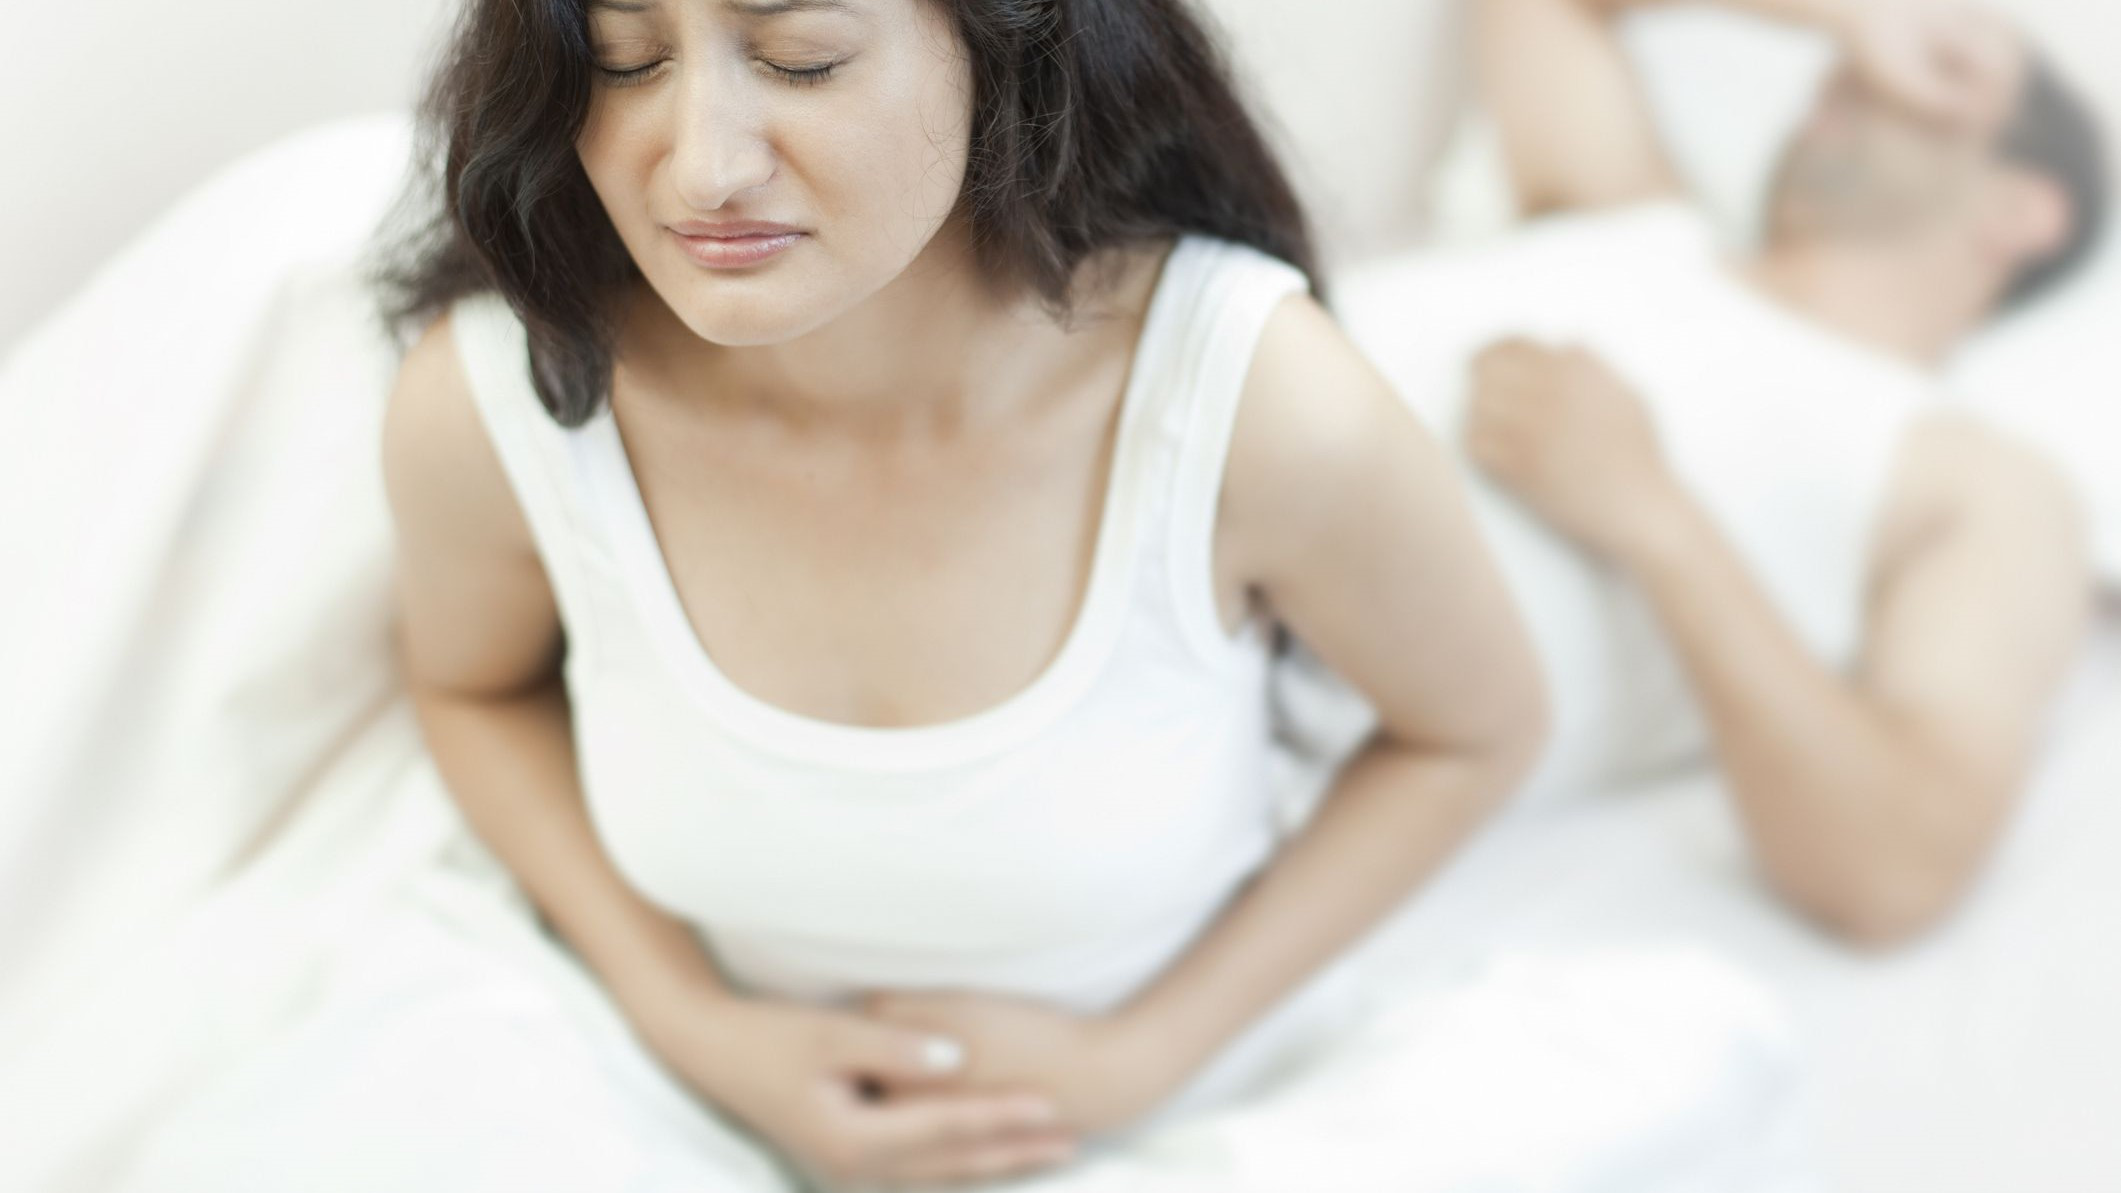 Có cần đi khám bác sĩ nếu quan hệ xong bị đau bụng dưới khi mang thai?
